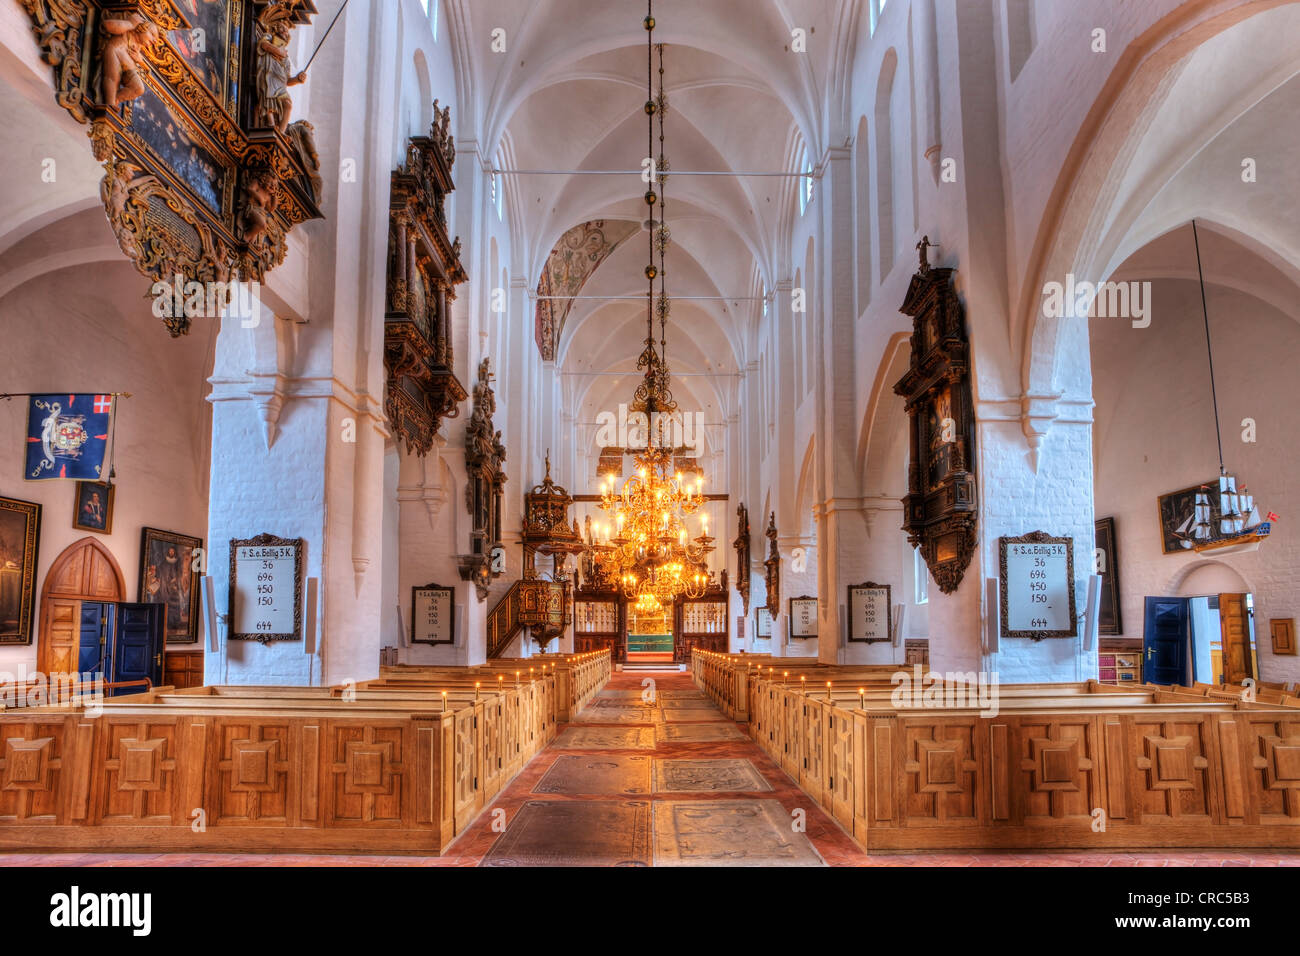 Interieur, Sct. Olai Domkirke Kathedrale, Helsingør, Helsingør, Dänemark, Europa Stockfoto